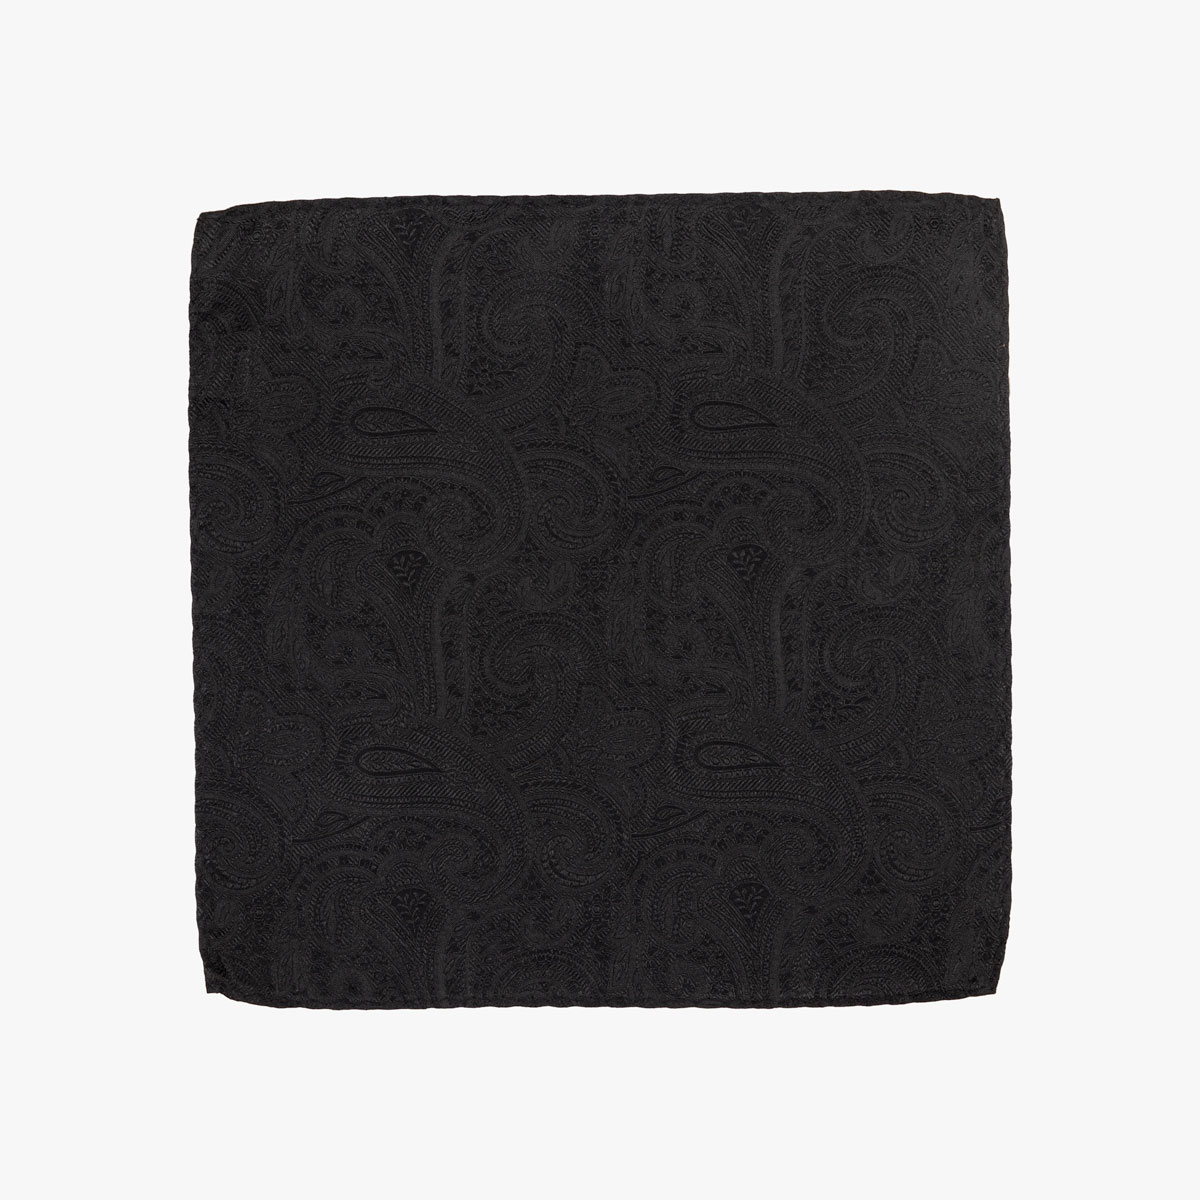 Einstecktuch aus Seide in schwarz mit Paisleymuster